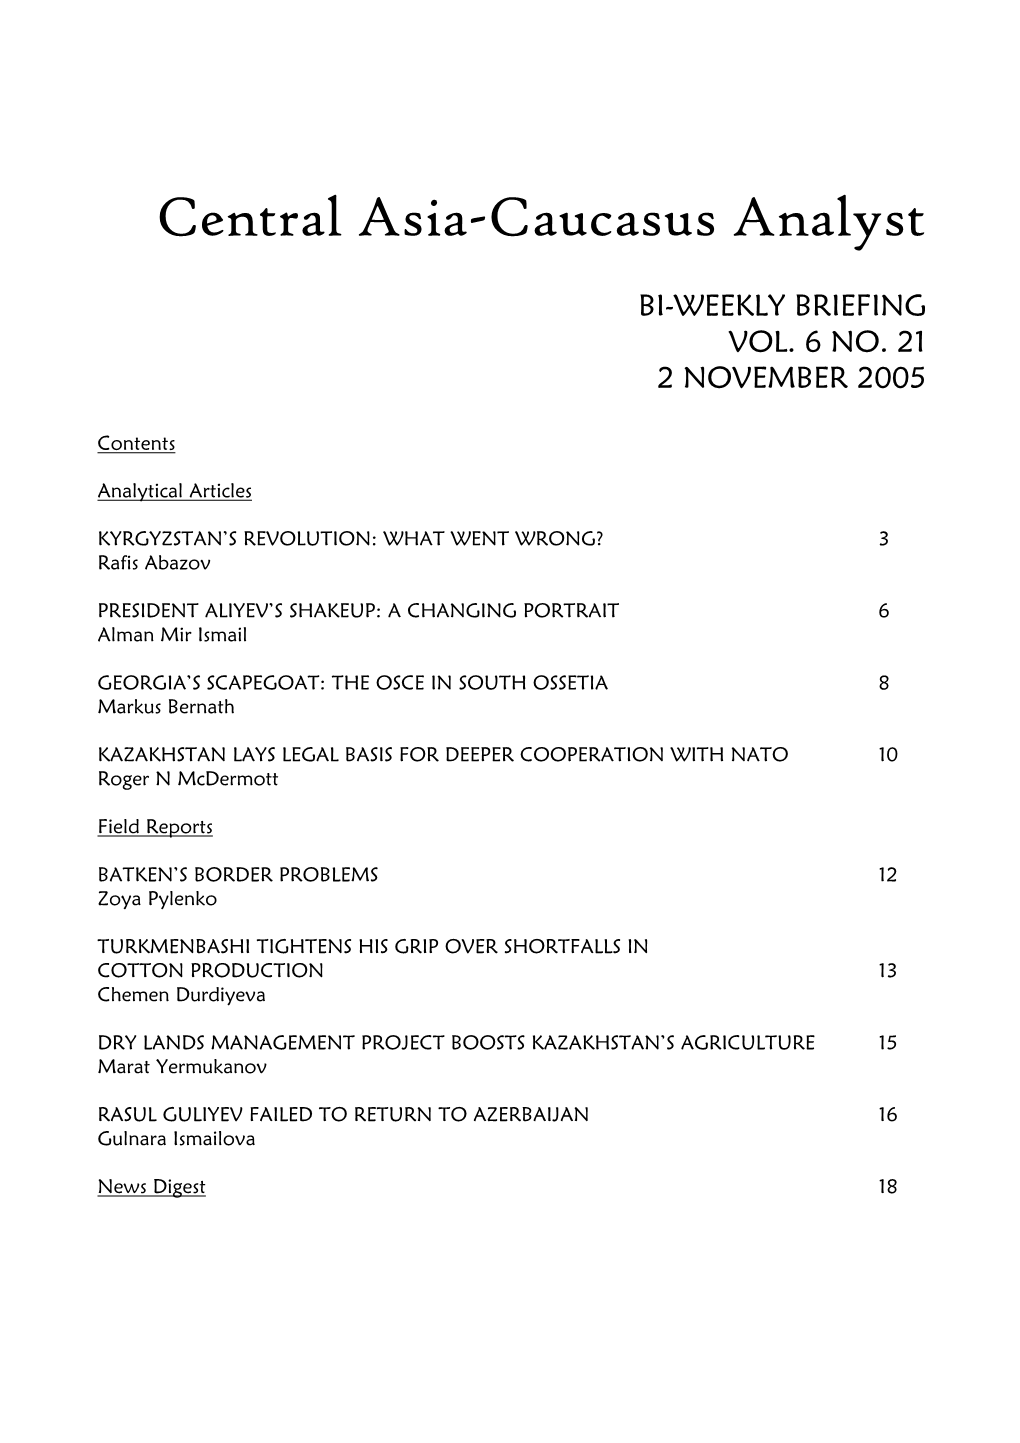 Central Asia-Caucasus Analyst Vol 6, No 21